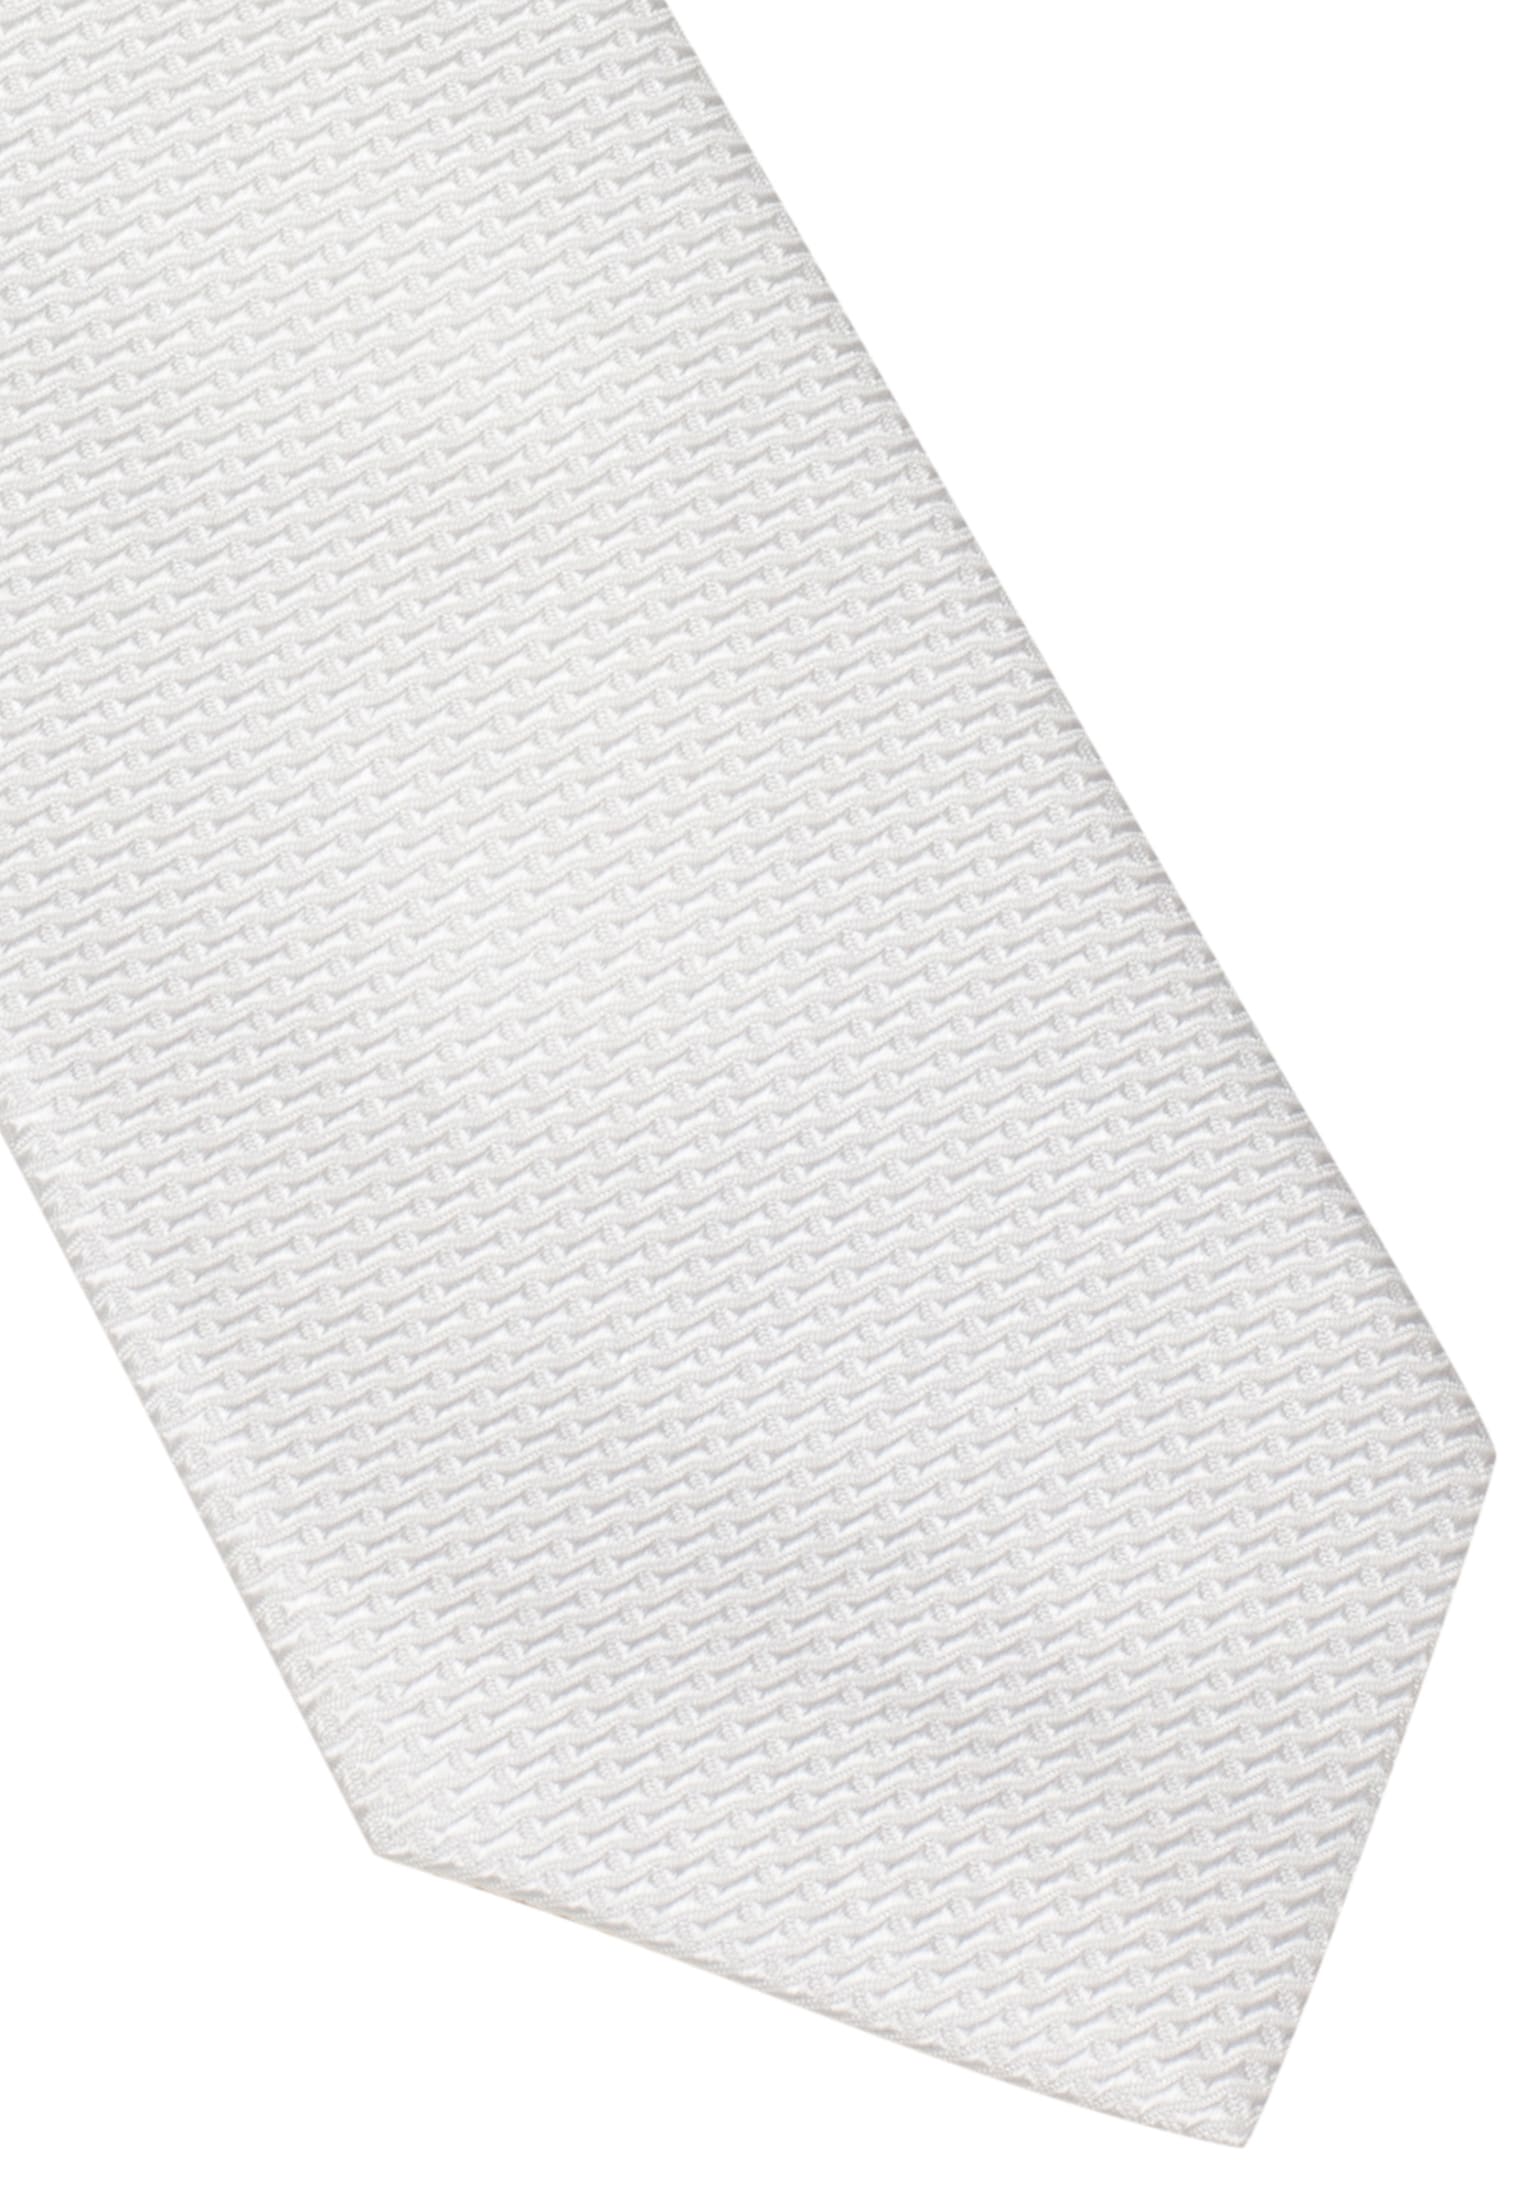 | 142 in 1AC01872-00-01-142 weiß Krawatte strukturiert weiß | |